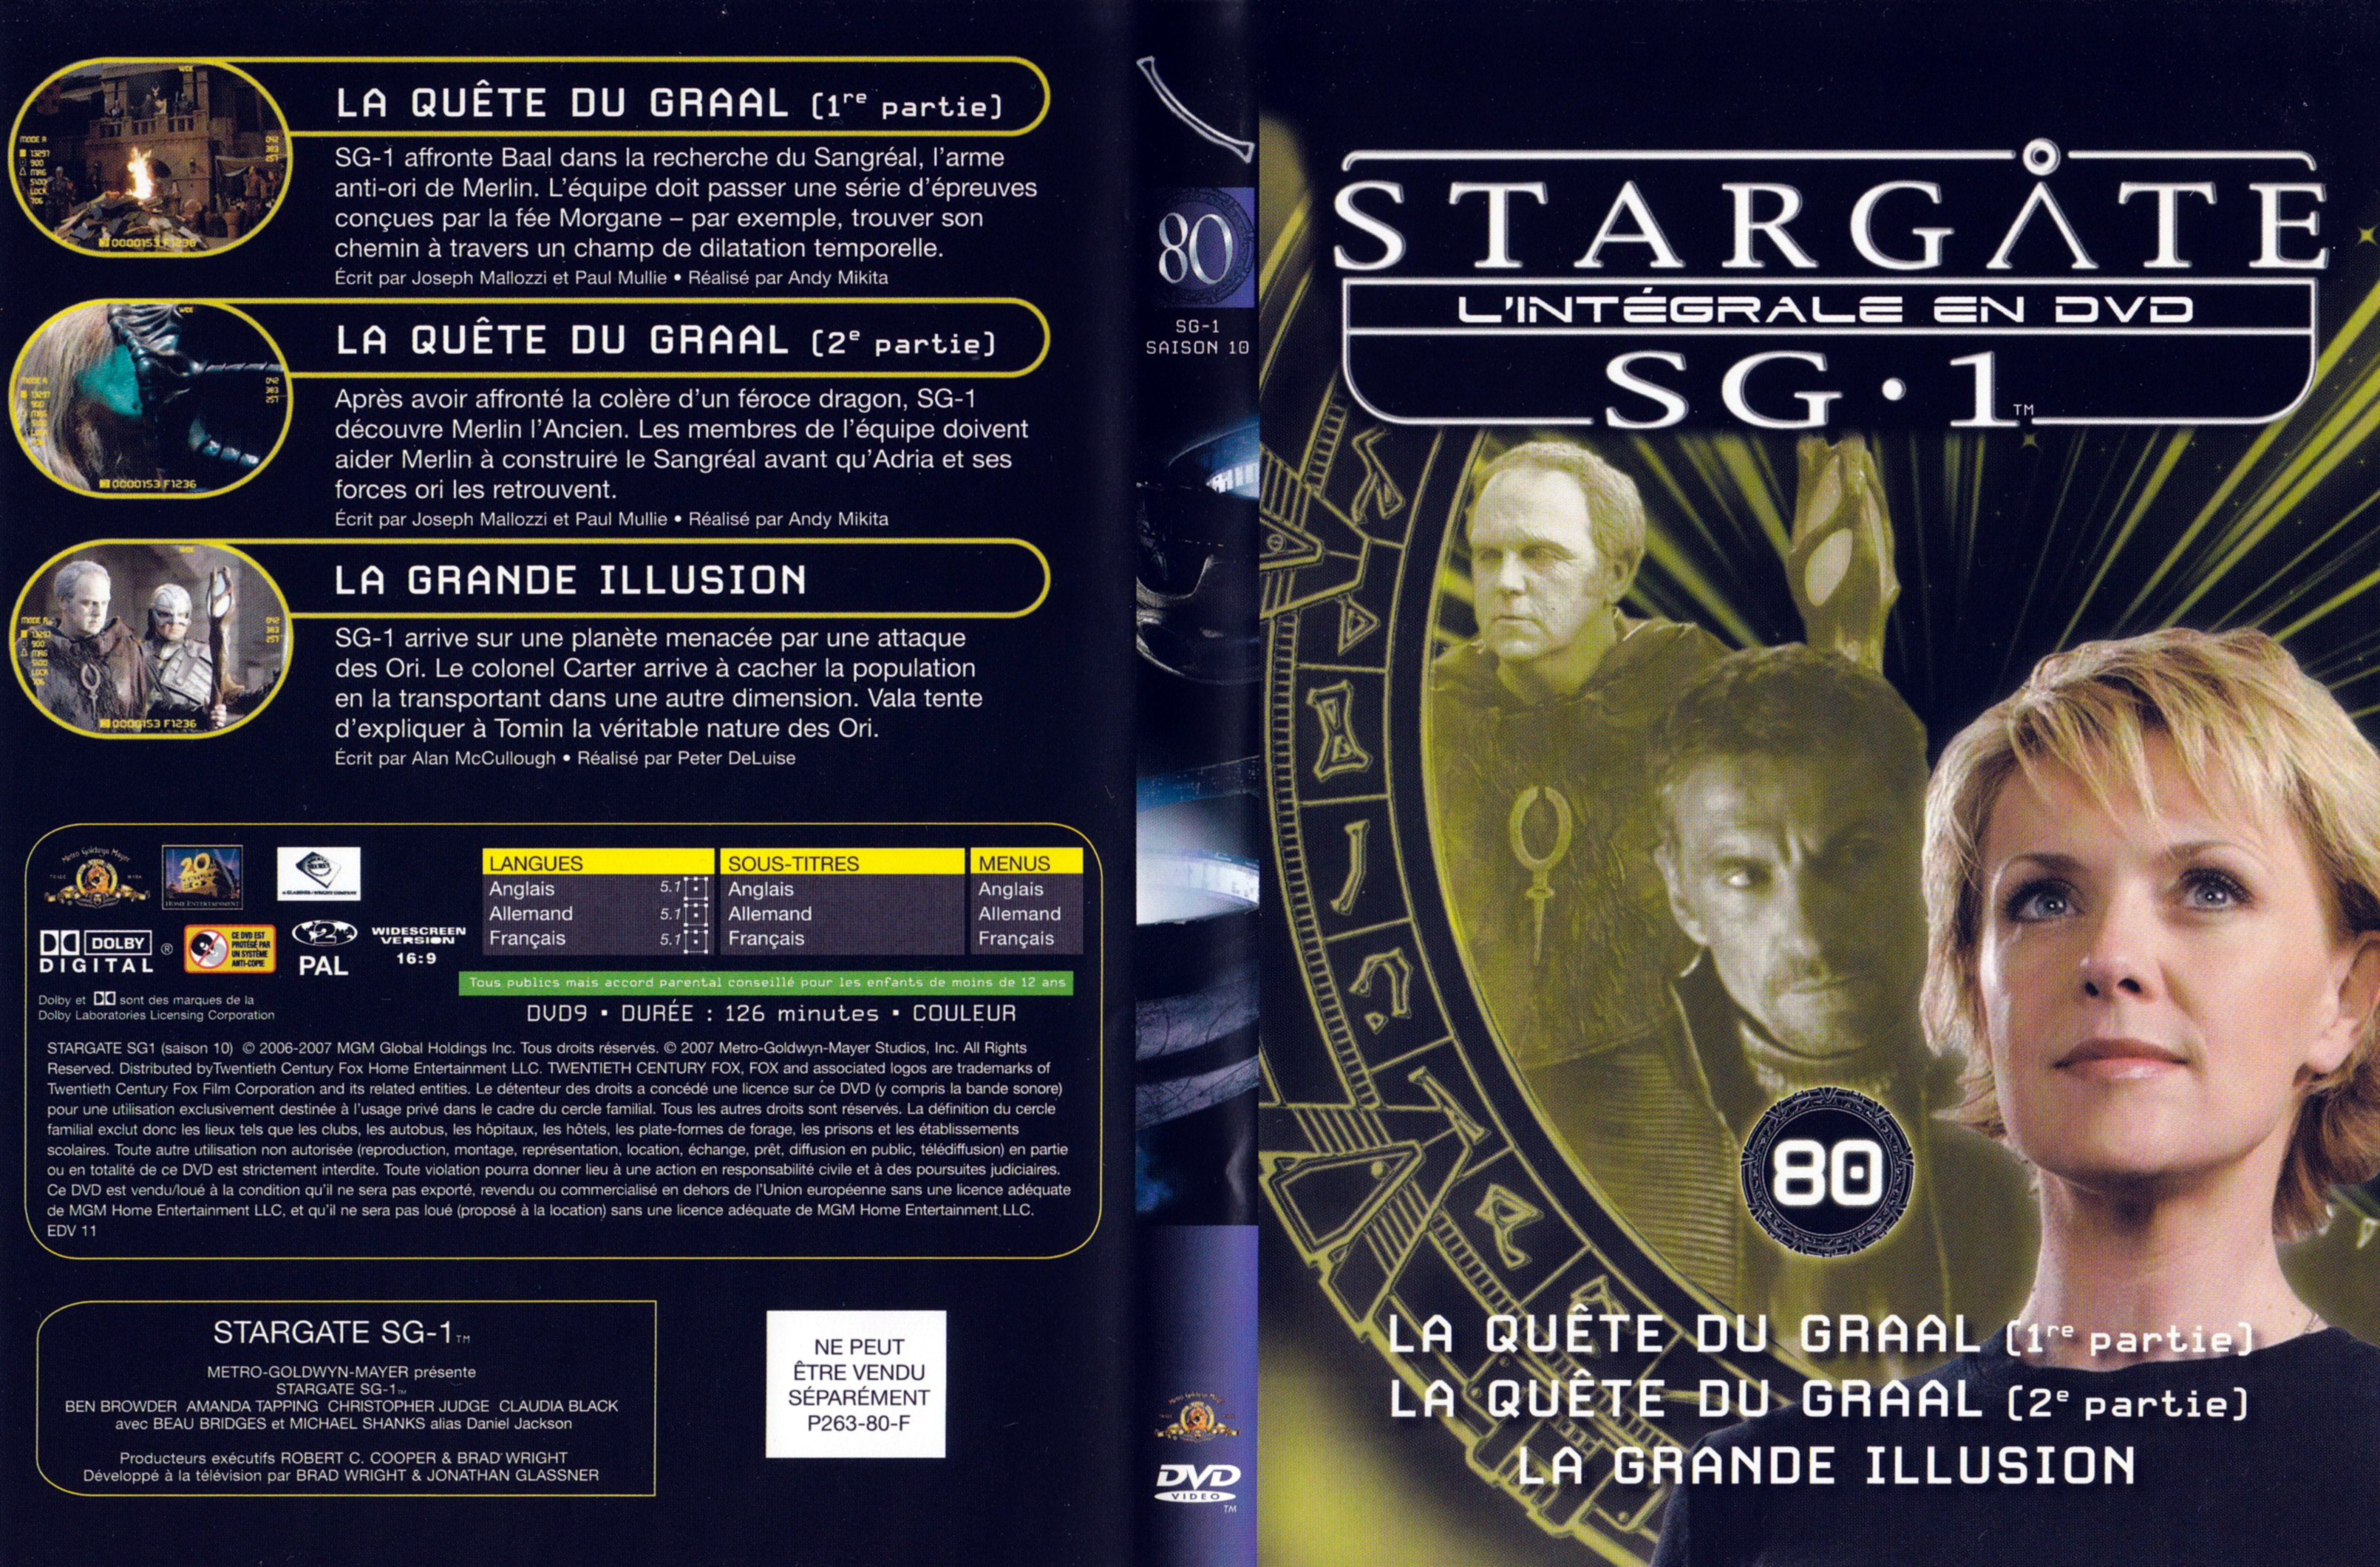 Jaquette DVD Stargate SG1 Intgrale Saison 10 vol 80